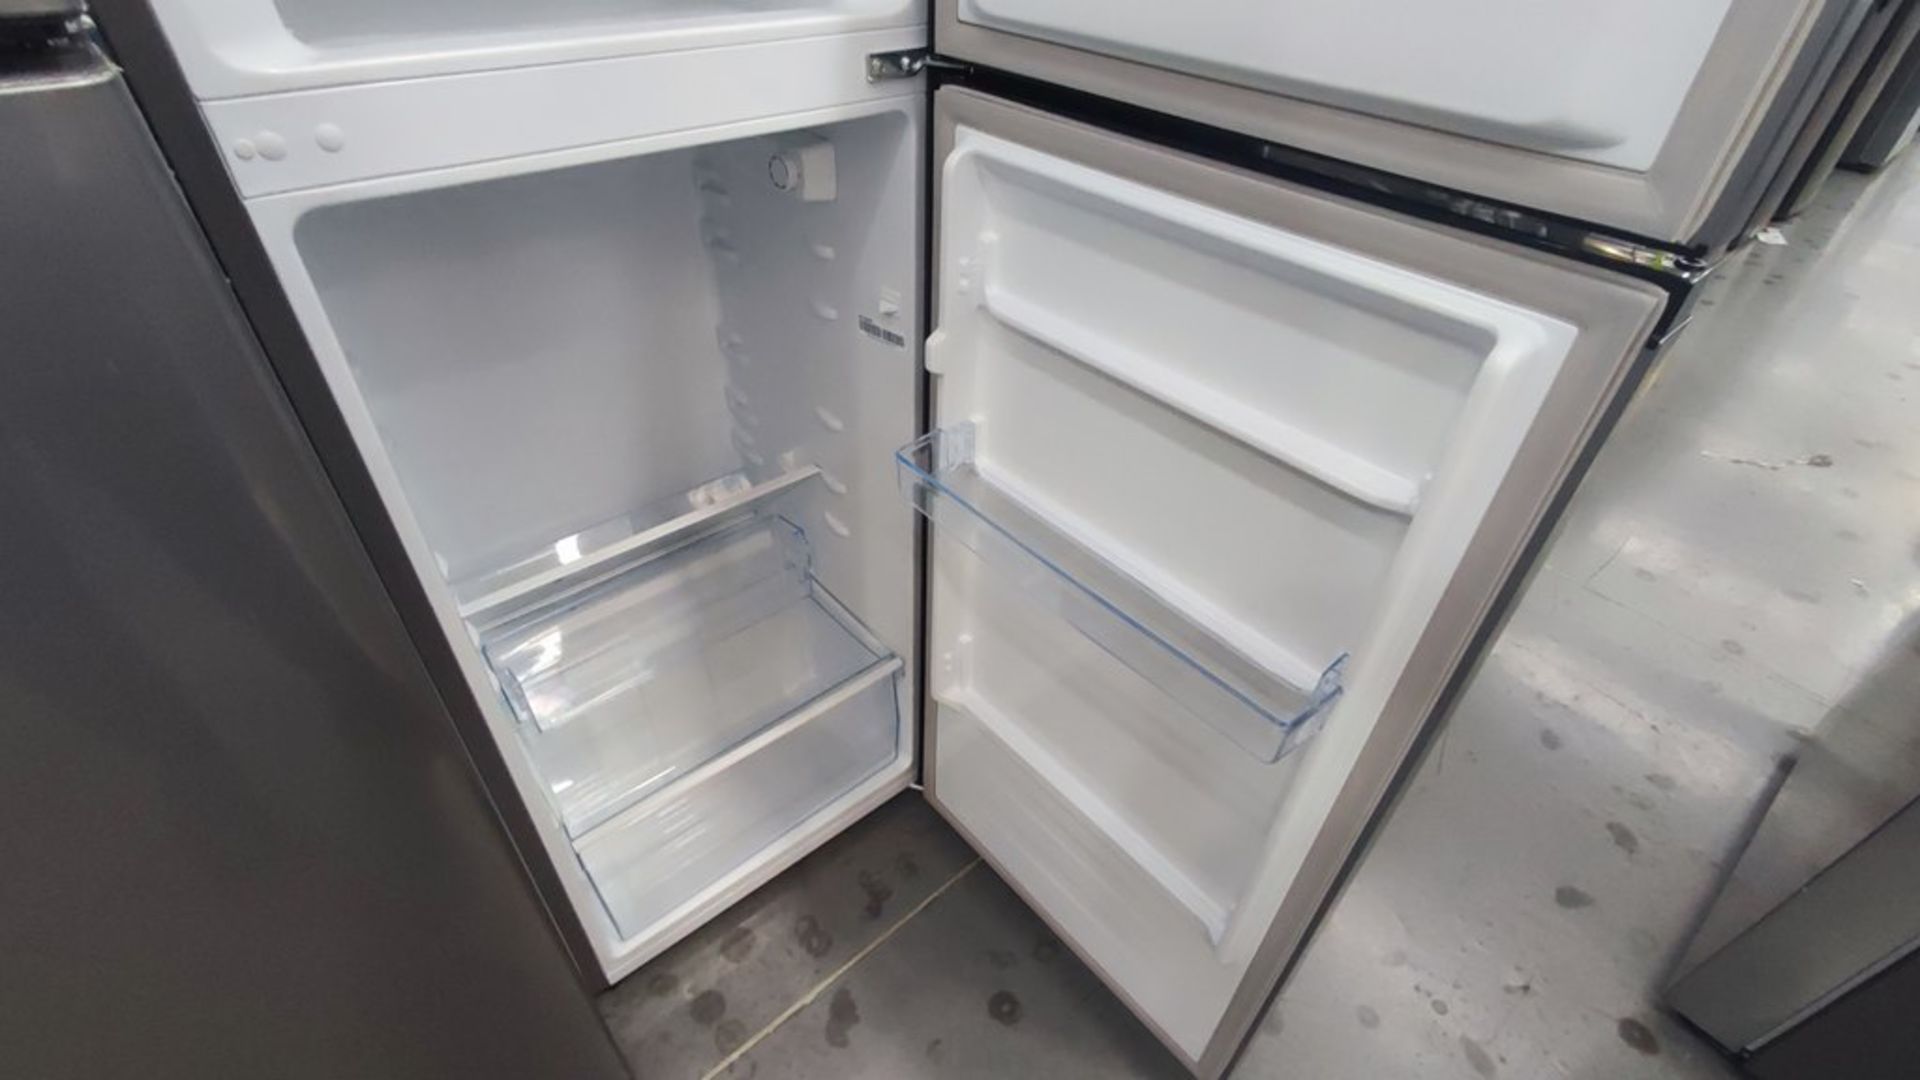 Lote de 2 Refrigeradores contiene: 1 Refrigerador Marca Hisense Modelo BCYNY, No de serie 1B0205Z00 - Image 10 of 11